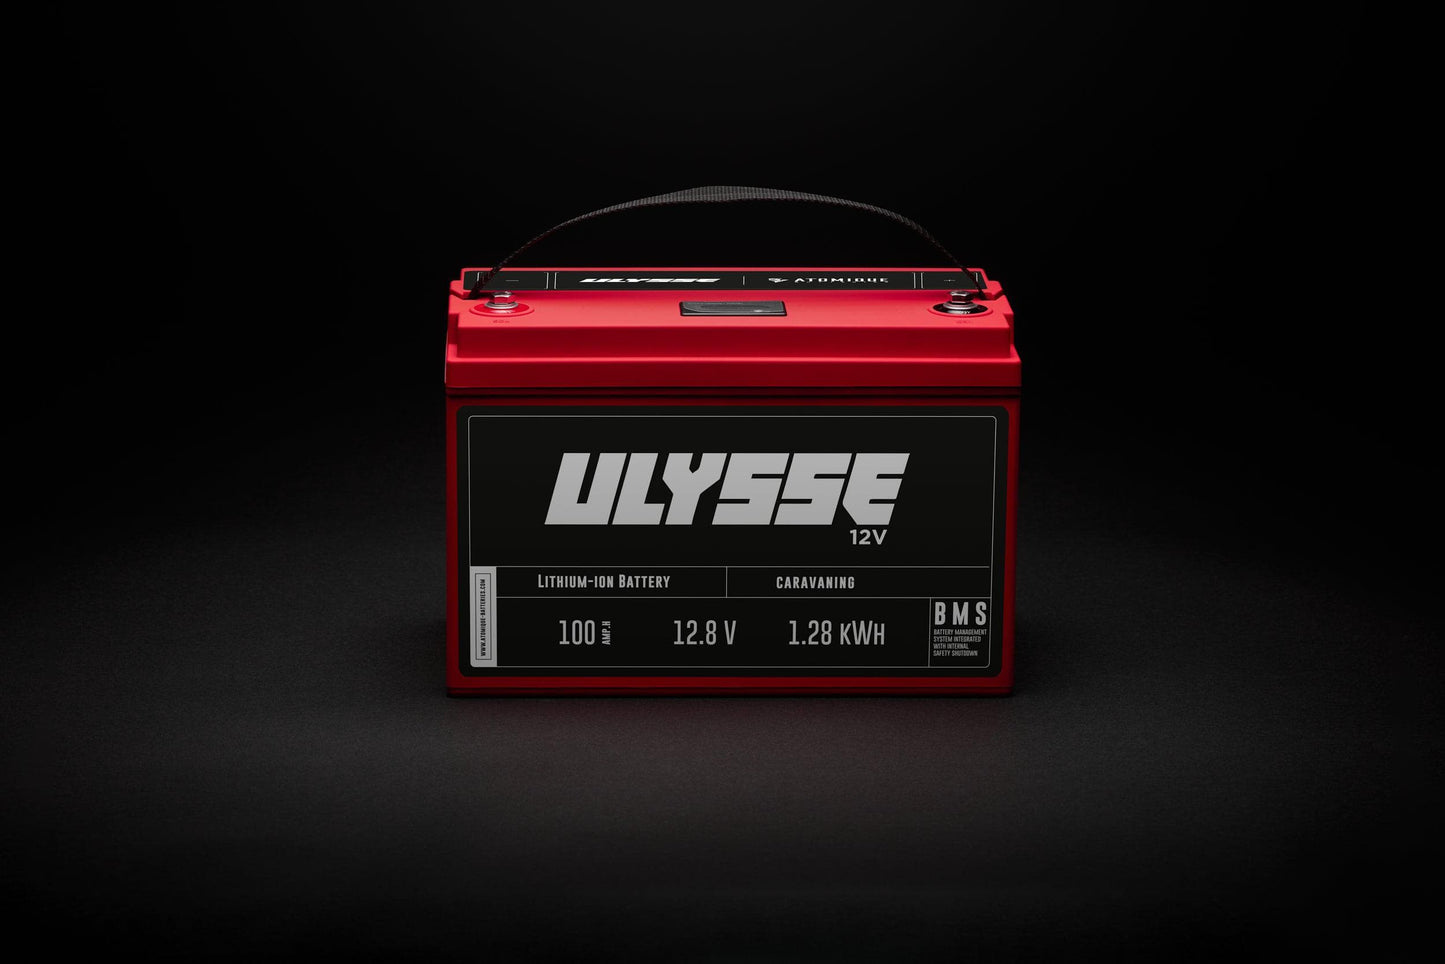 ULYSSE 12V - 100Ah